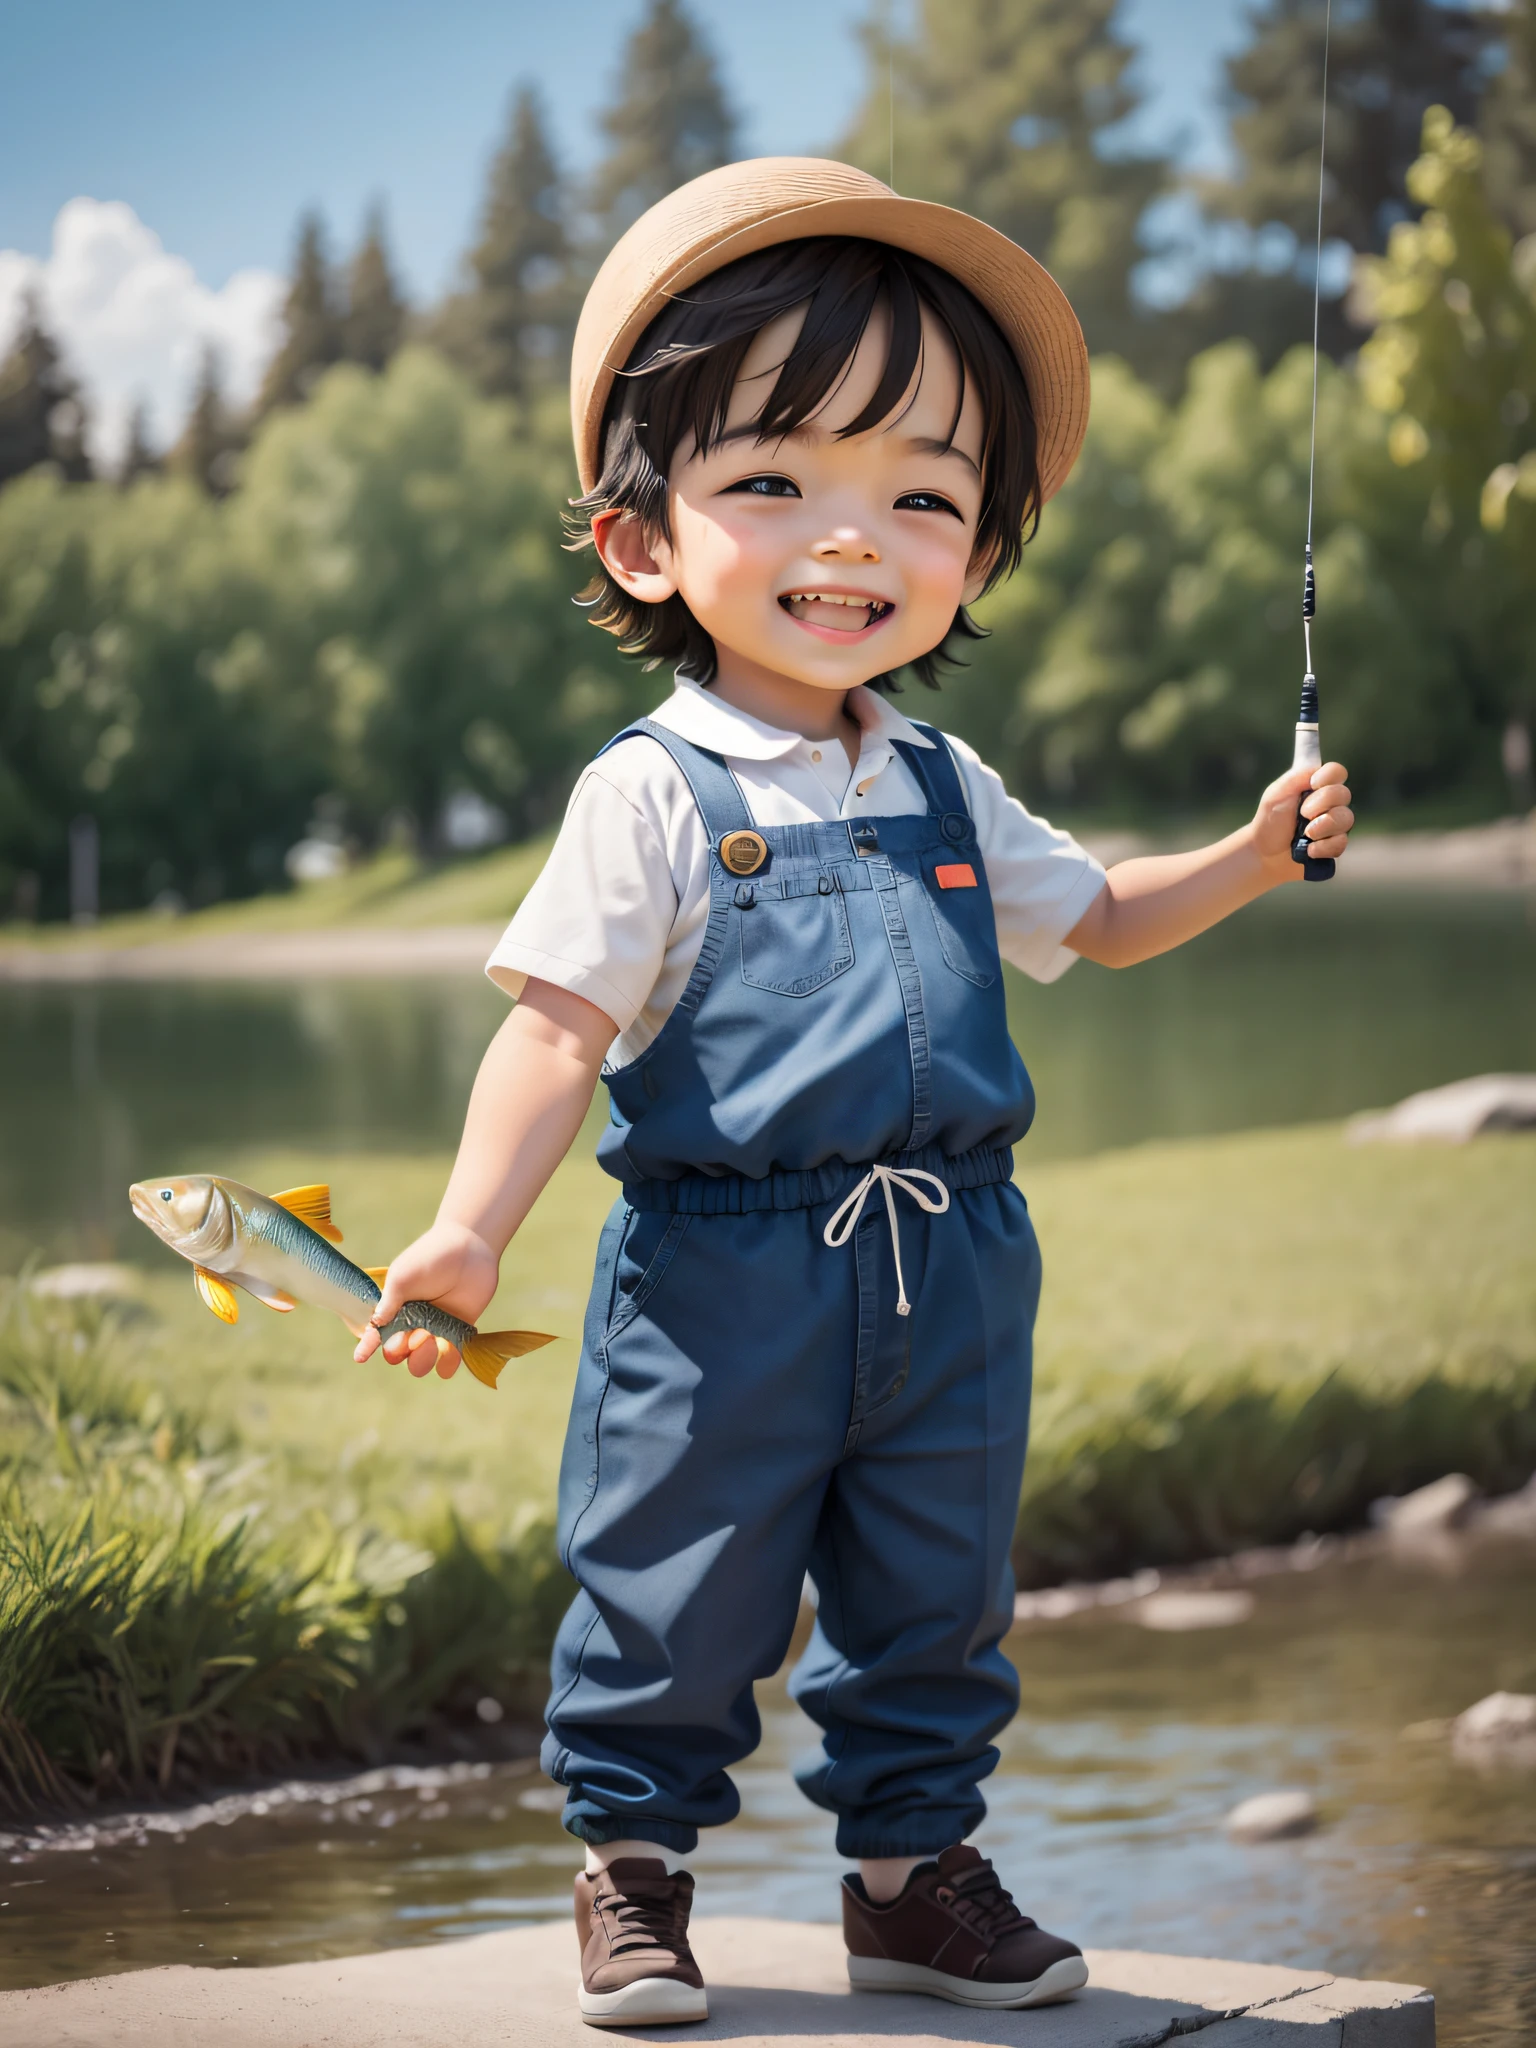 Um garotinho fofo ficou especialmente feliz ao pegar um peixe